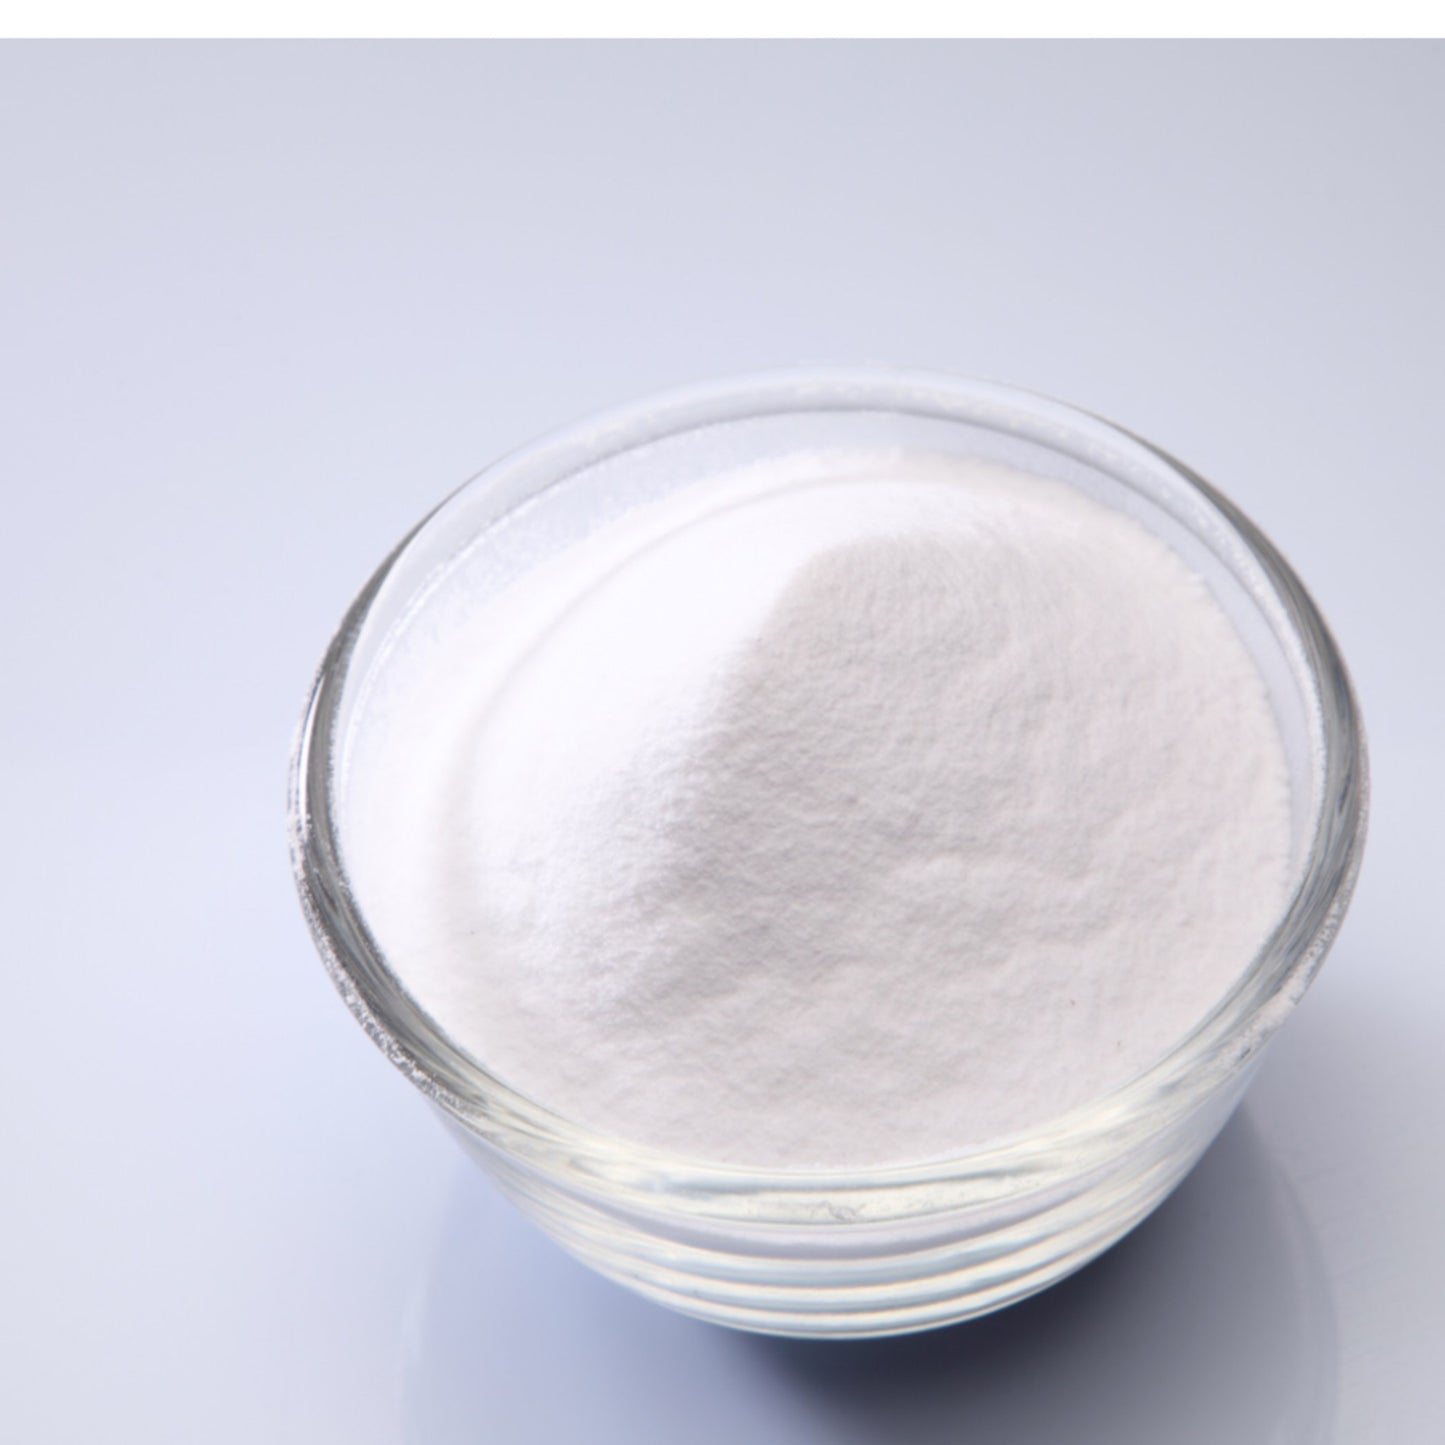 4 Sodium Bicarbonate - Four Ingredients